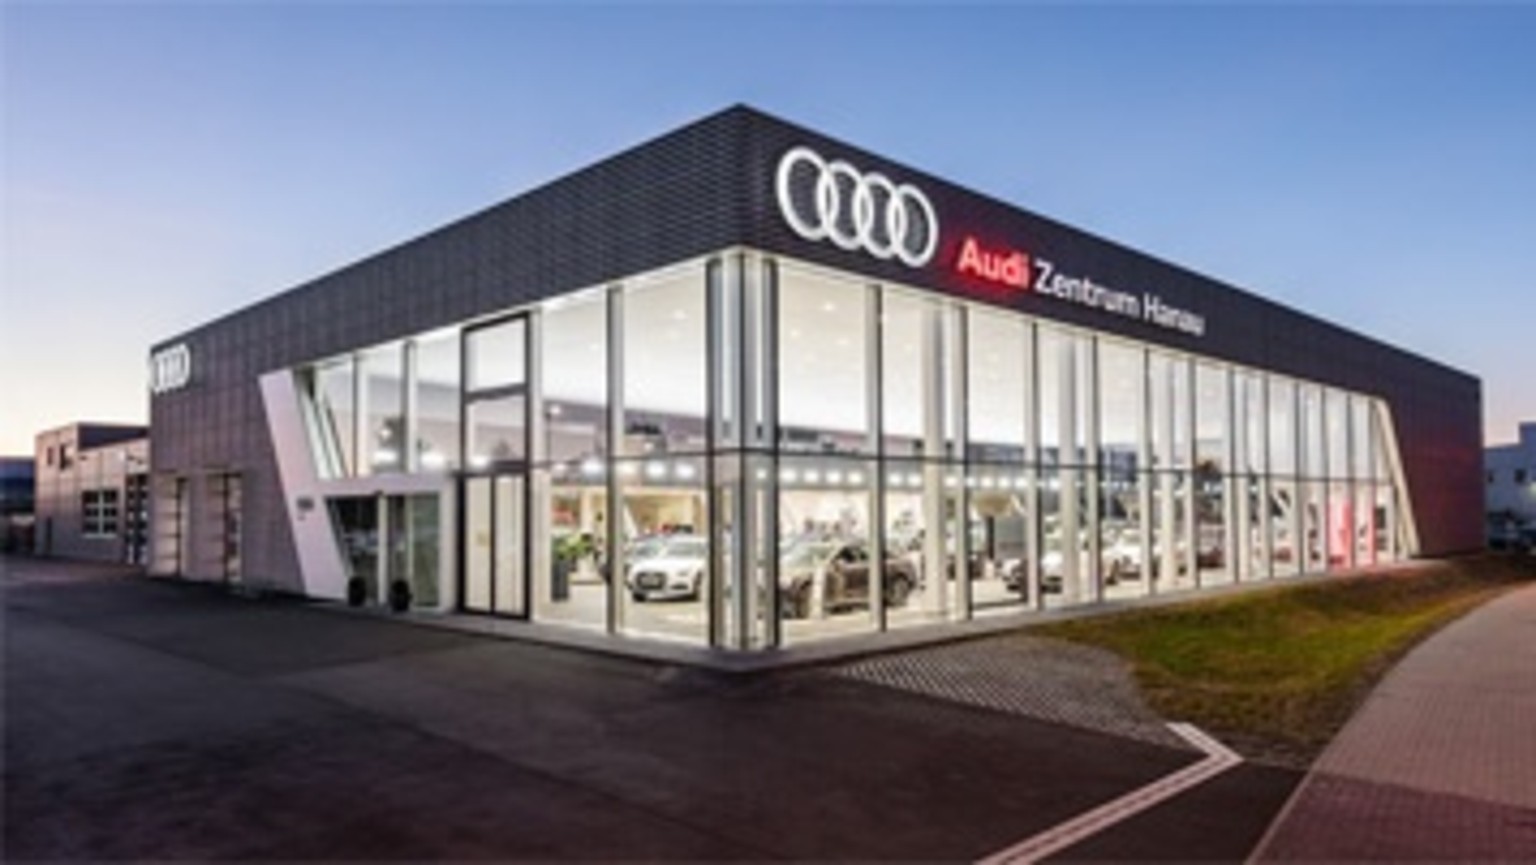 Audi TT Roadster  Audi Zentrum Aschaffenburg